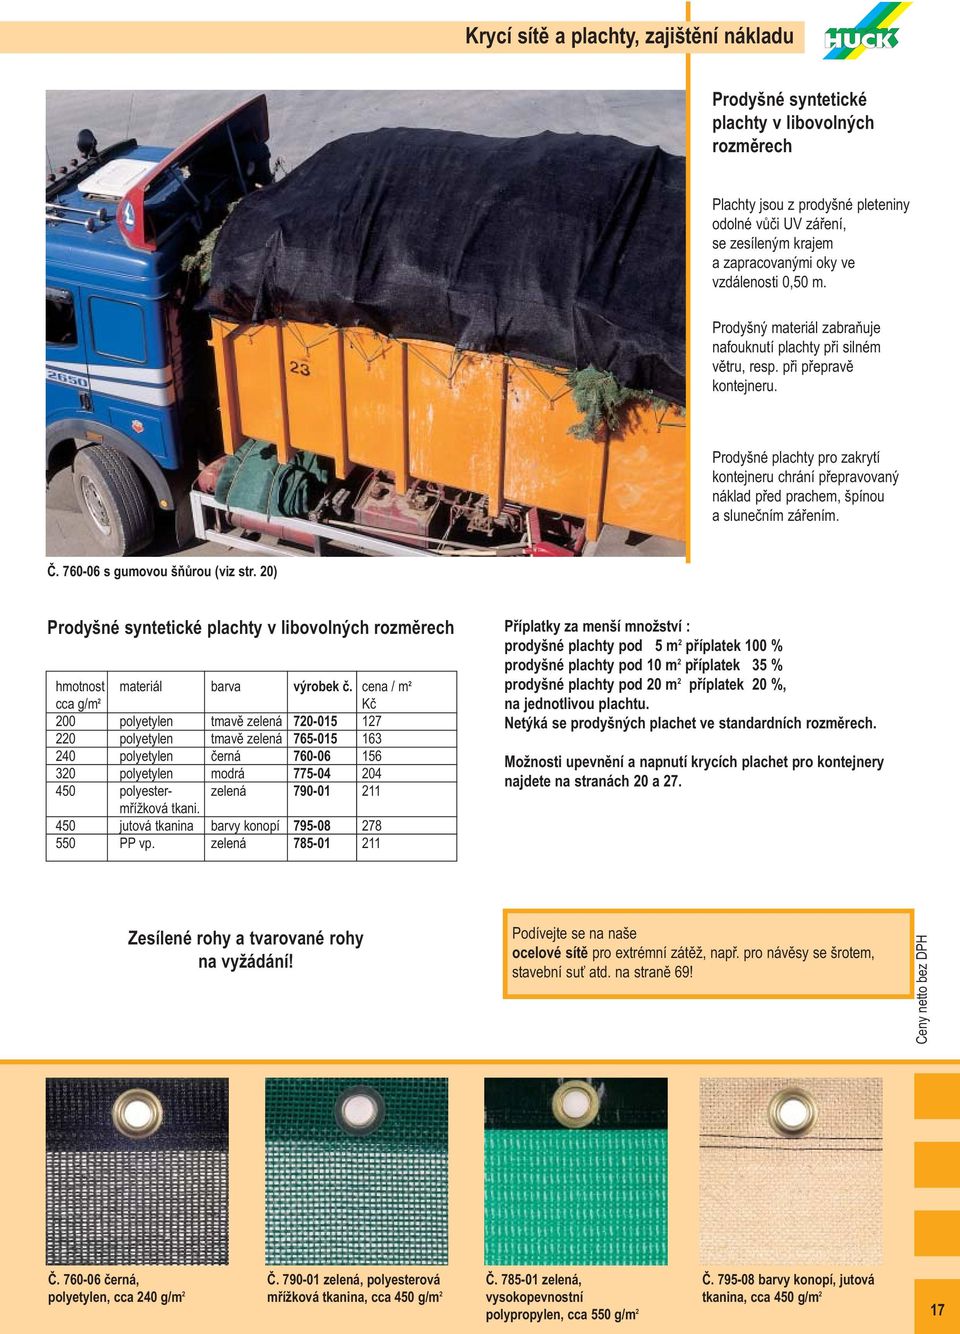 Prodyšné plachty pro zakrytí kontejneru chrání přepravovaný náklad před prachem, špínou a slunečním zářením. Č. 760-06 s gumovou šňůrou (viz str.